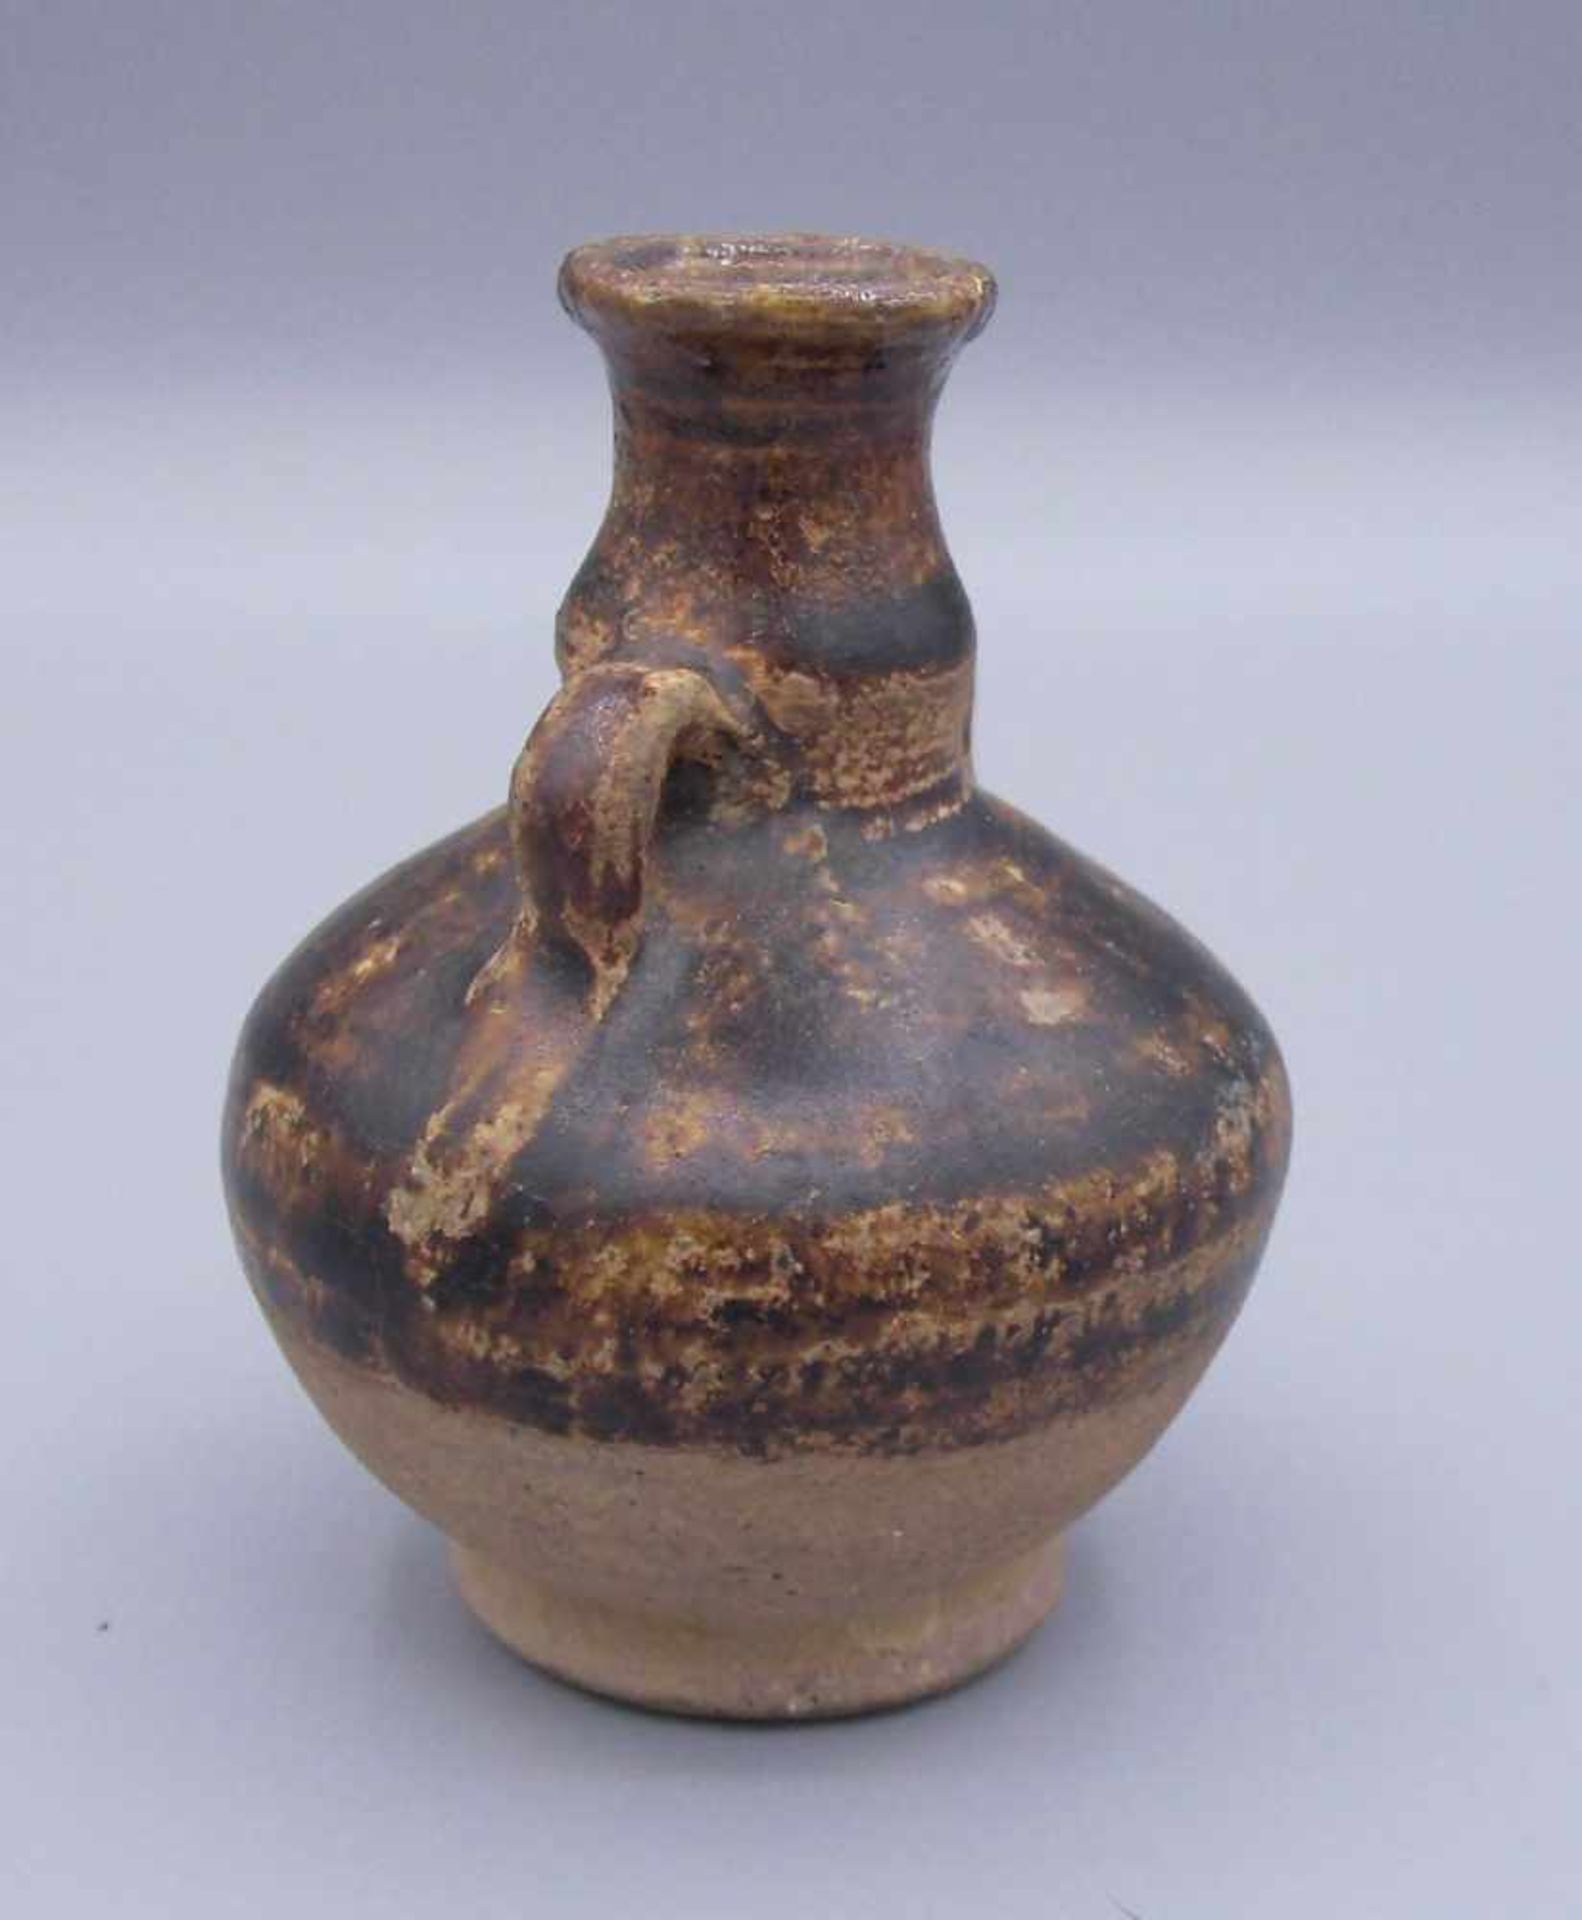 KLEINER KRUG, China, Keramik, heller Scherben, partiell braun glasiert. Gebauchte Form mit - Bild 2 aus 6